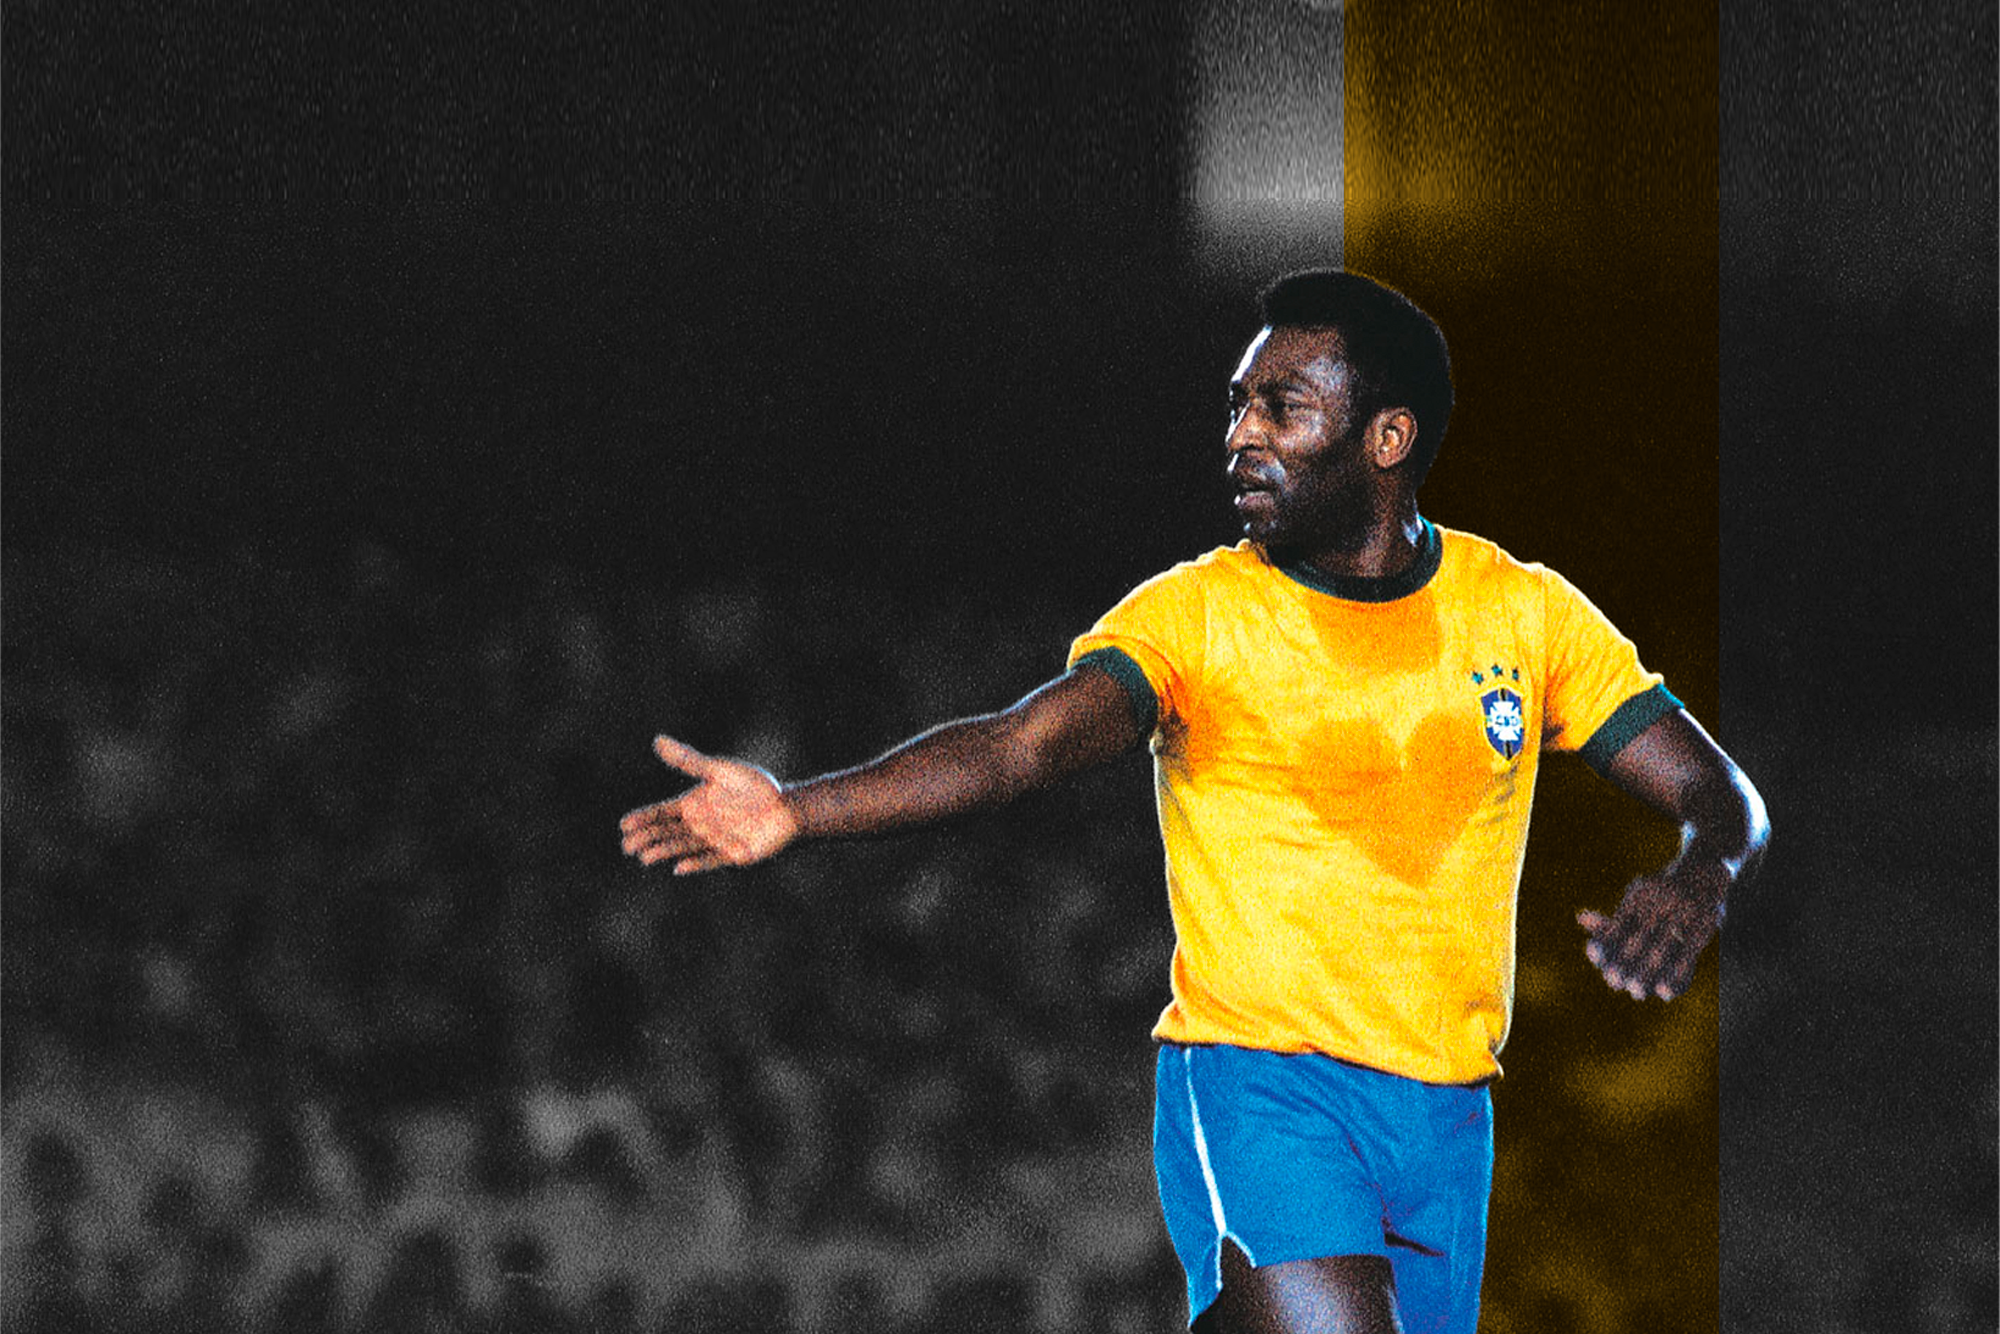 Conheça um pouco a história de vida, e algumas lesões sofridas por Pelé